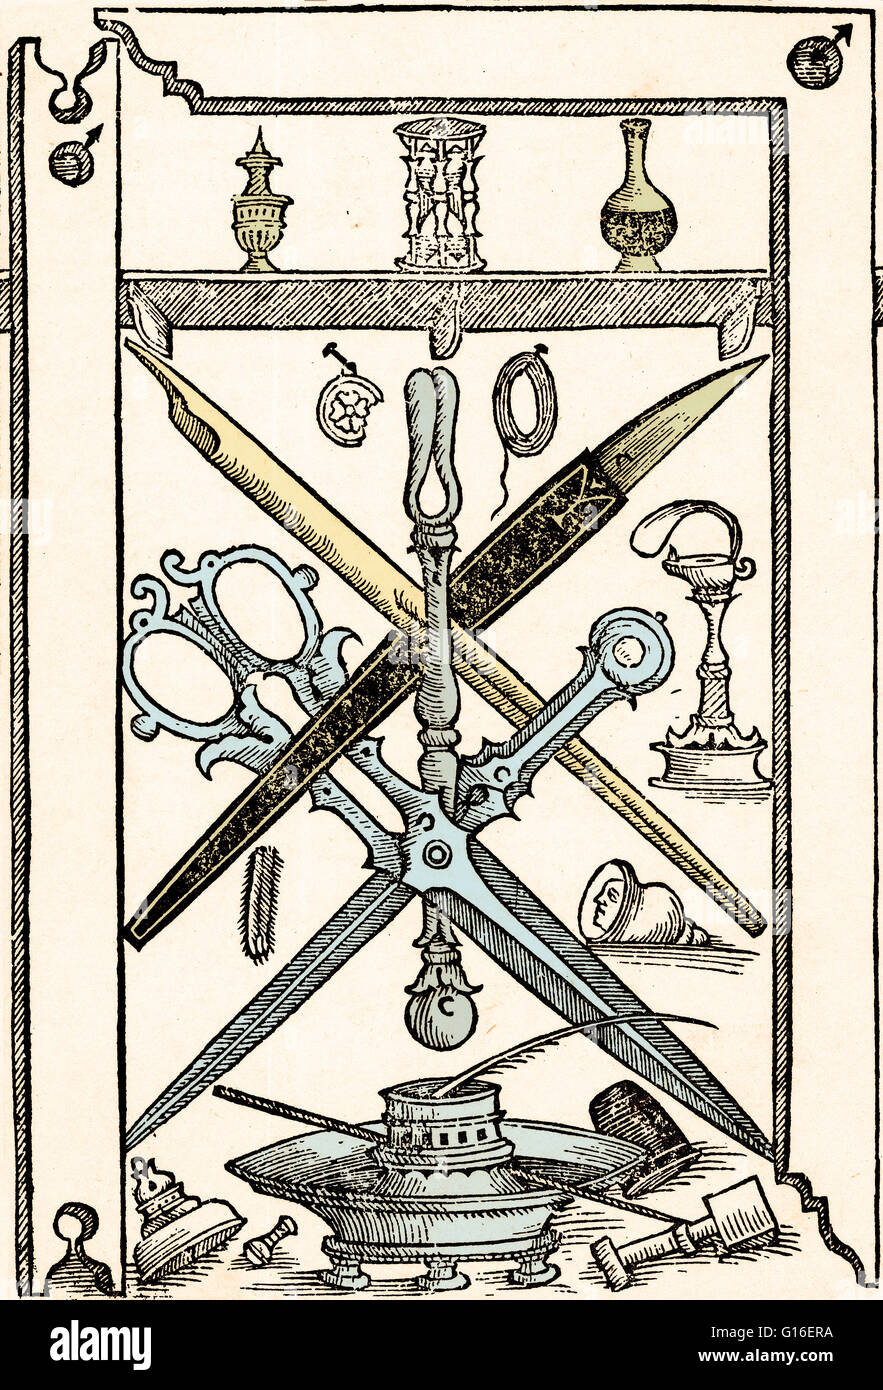 Verbesserte Darstellung der Schreibgeräte von Libro Nuovo d'imparare ein Scrivere ("neues Buch für Learning to Write"), durch Giambattista Palatino, 1540 Farbe. Das Buch erwies sich als eines der einflussreichsten Bücher über das Schreiben aus dem 16. Jahrhundert. Pala Stockfoto